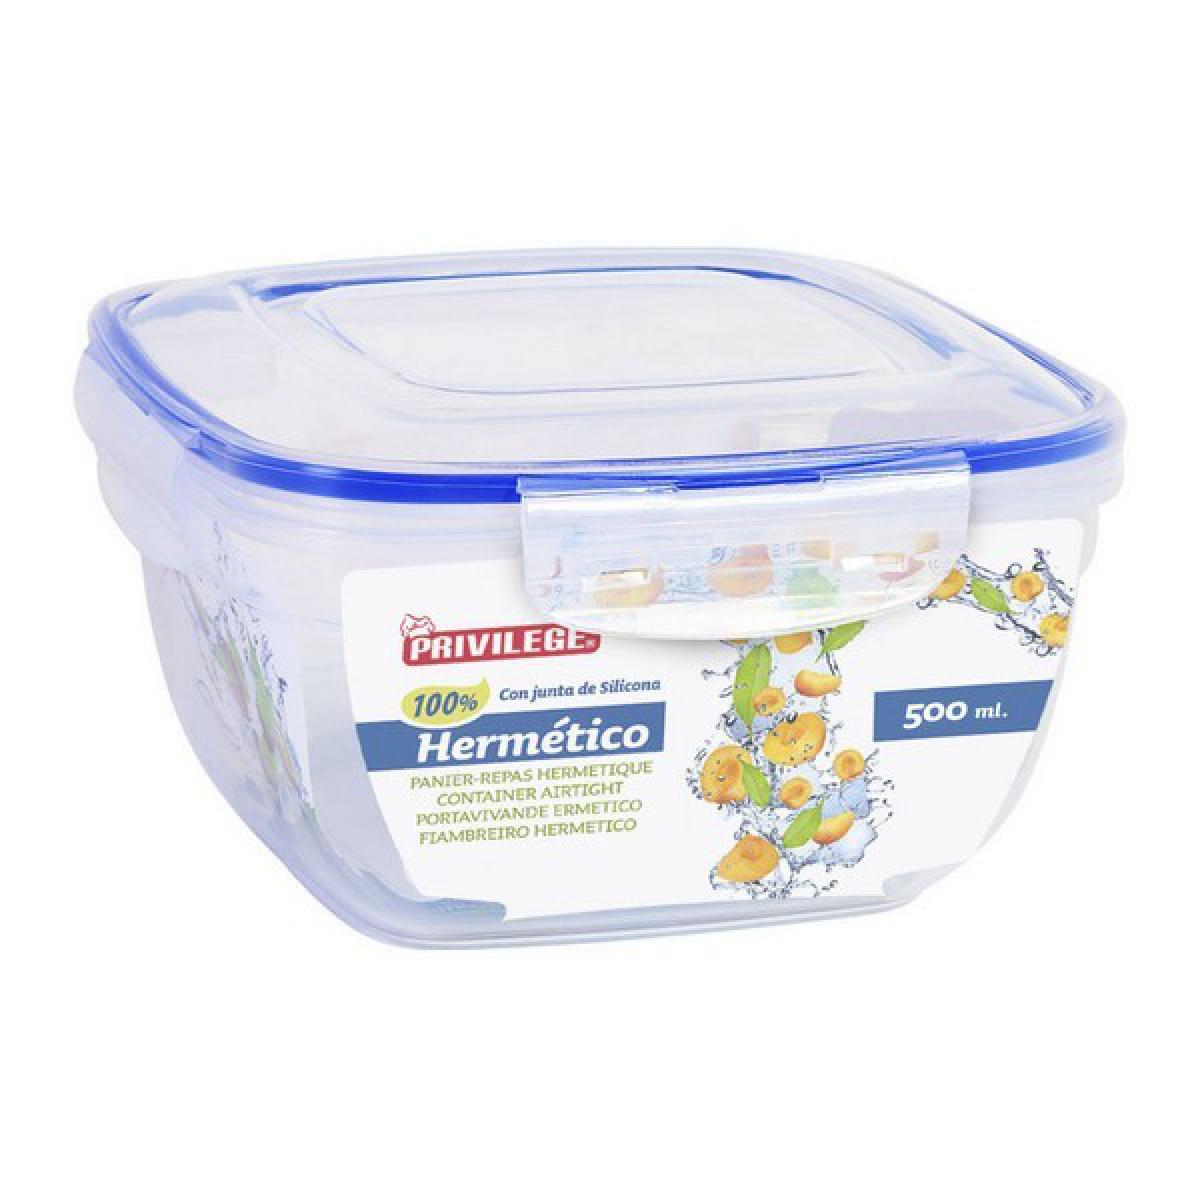 Totalcadeau - Lunch box à fermeture hermétique Carré transparent Boîte Repas Fermeture pour Conservation Pas cher - Objets déco